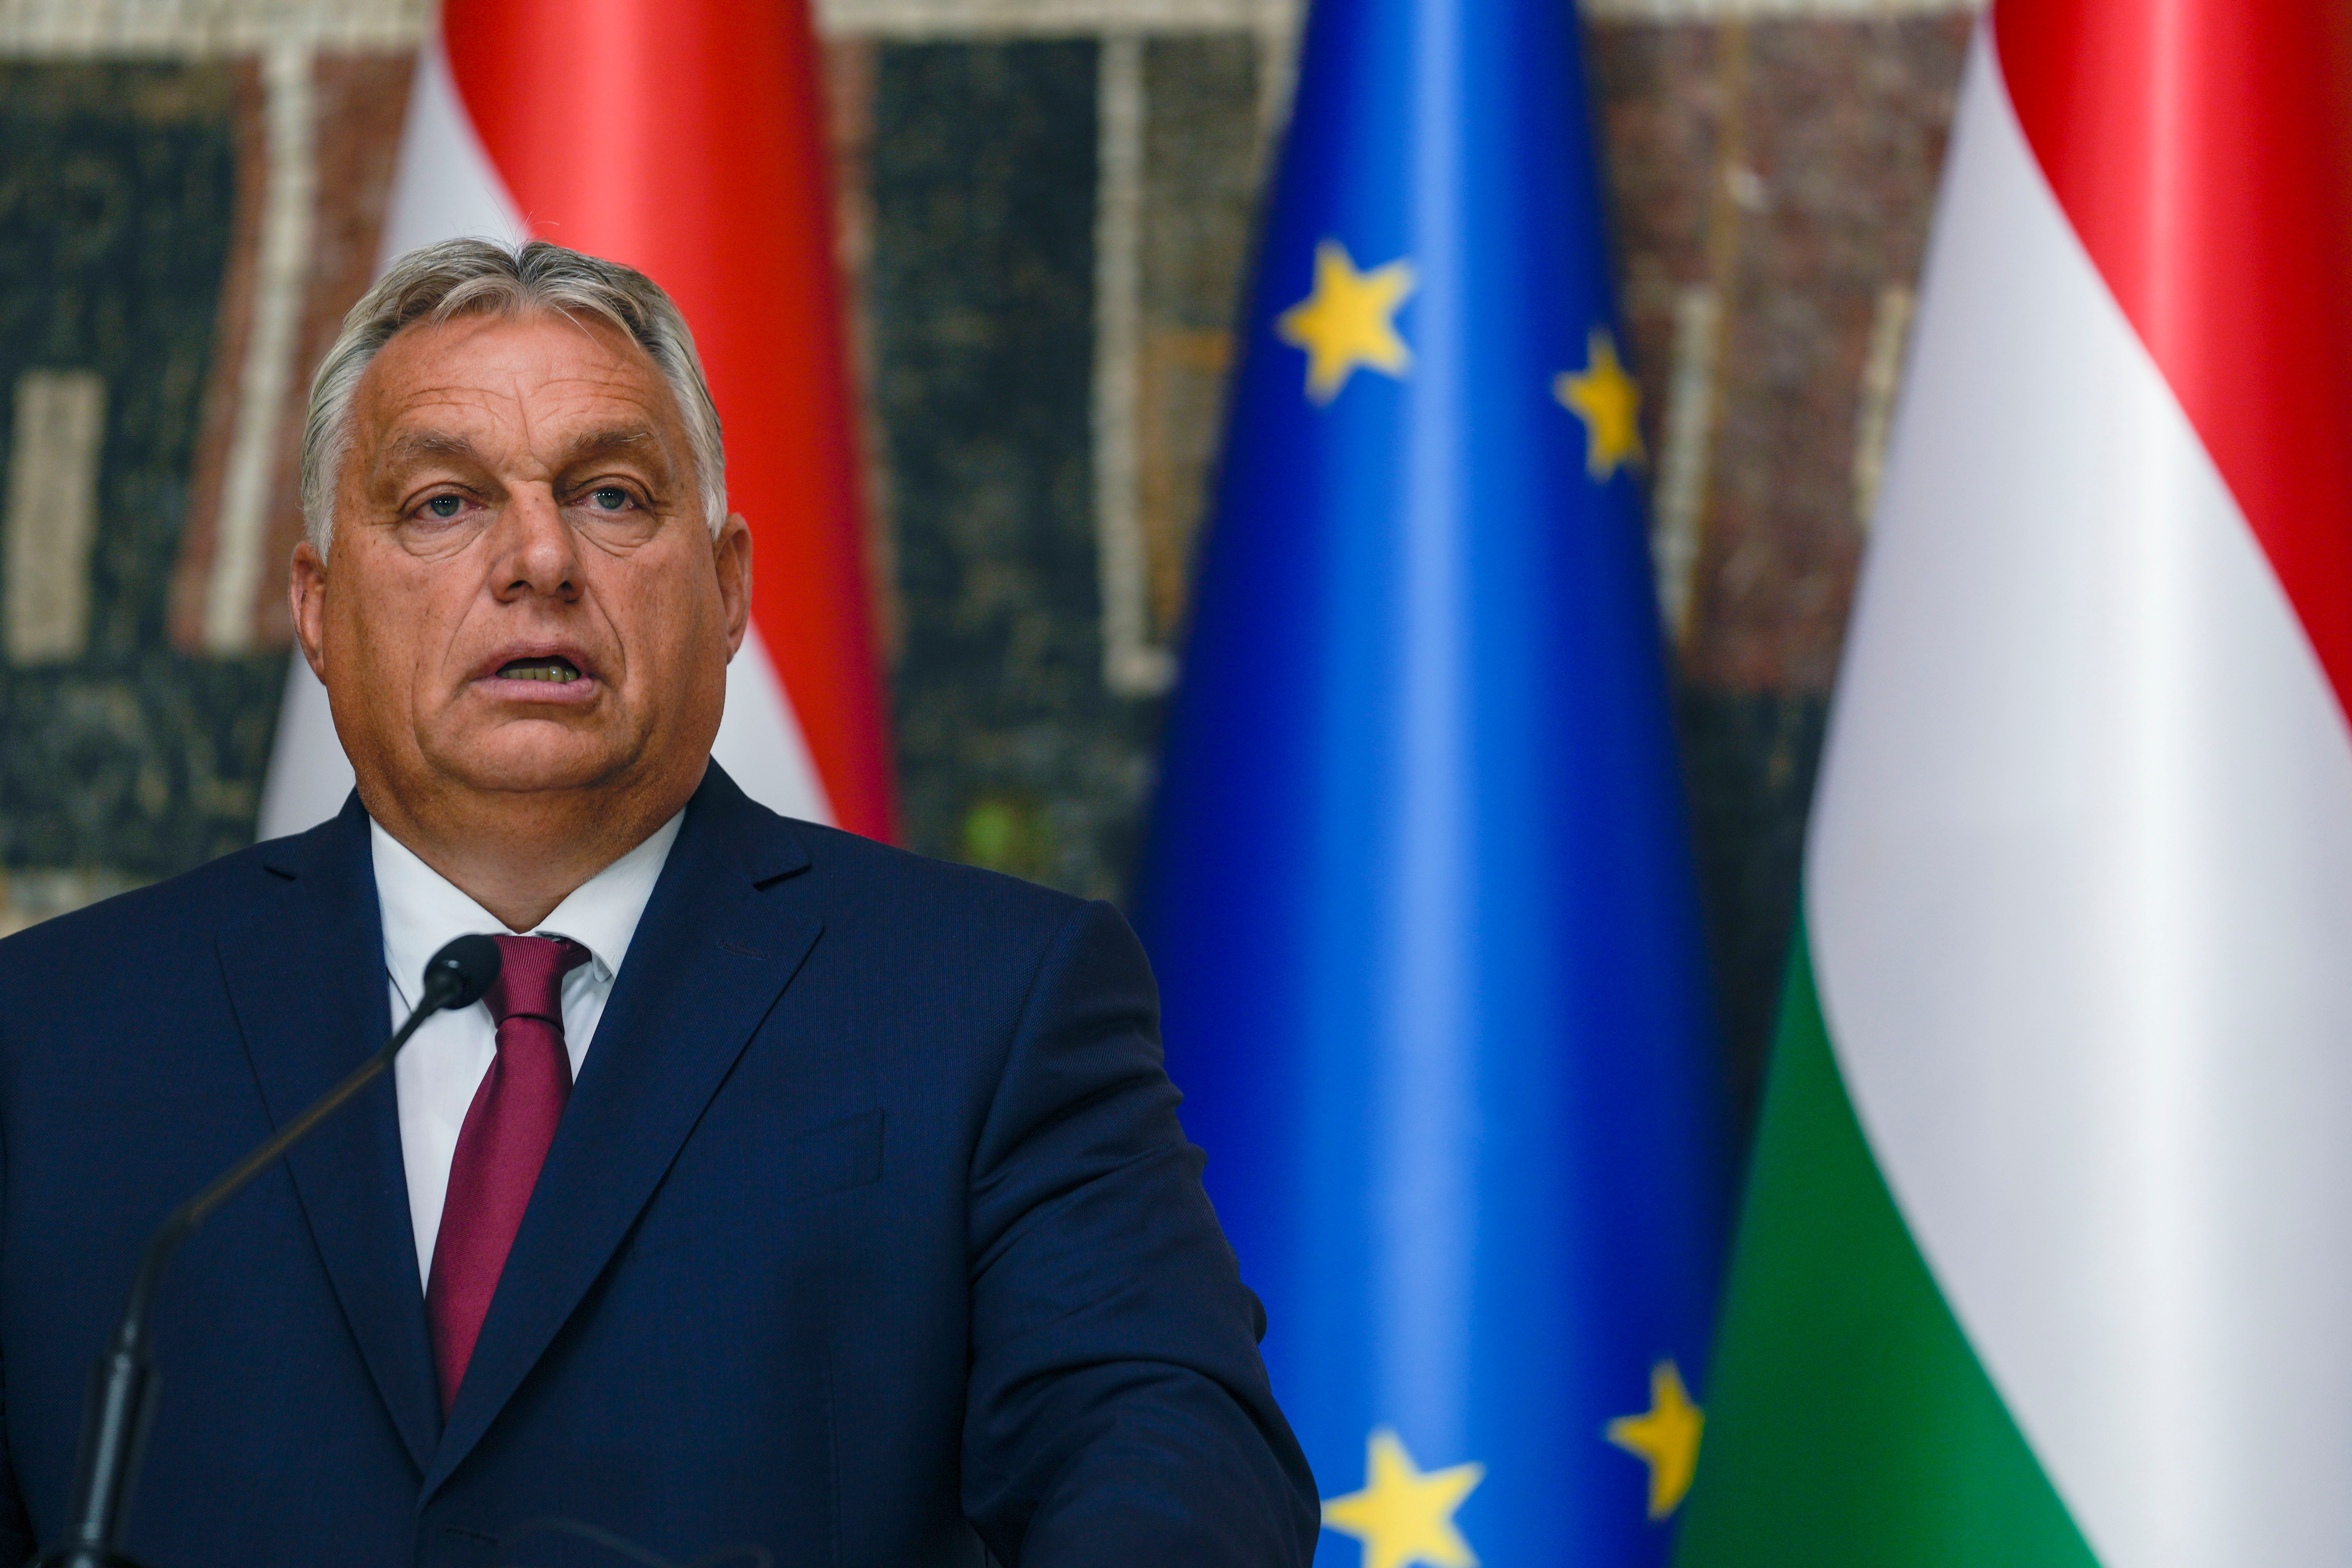 Prime Minister Viktor Orban